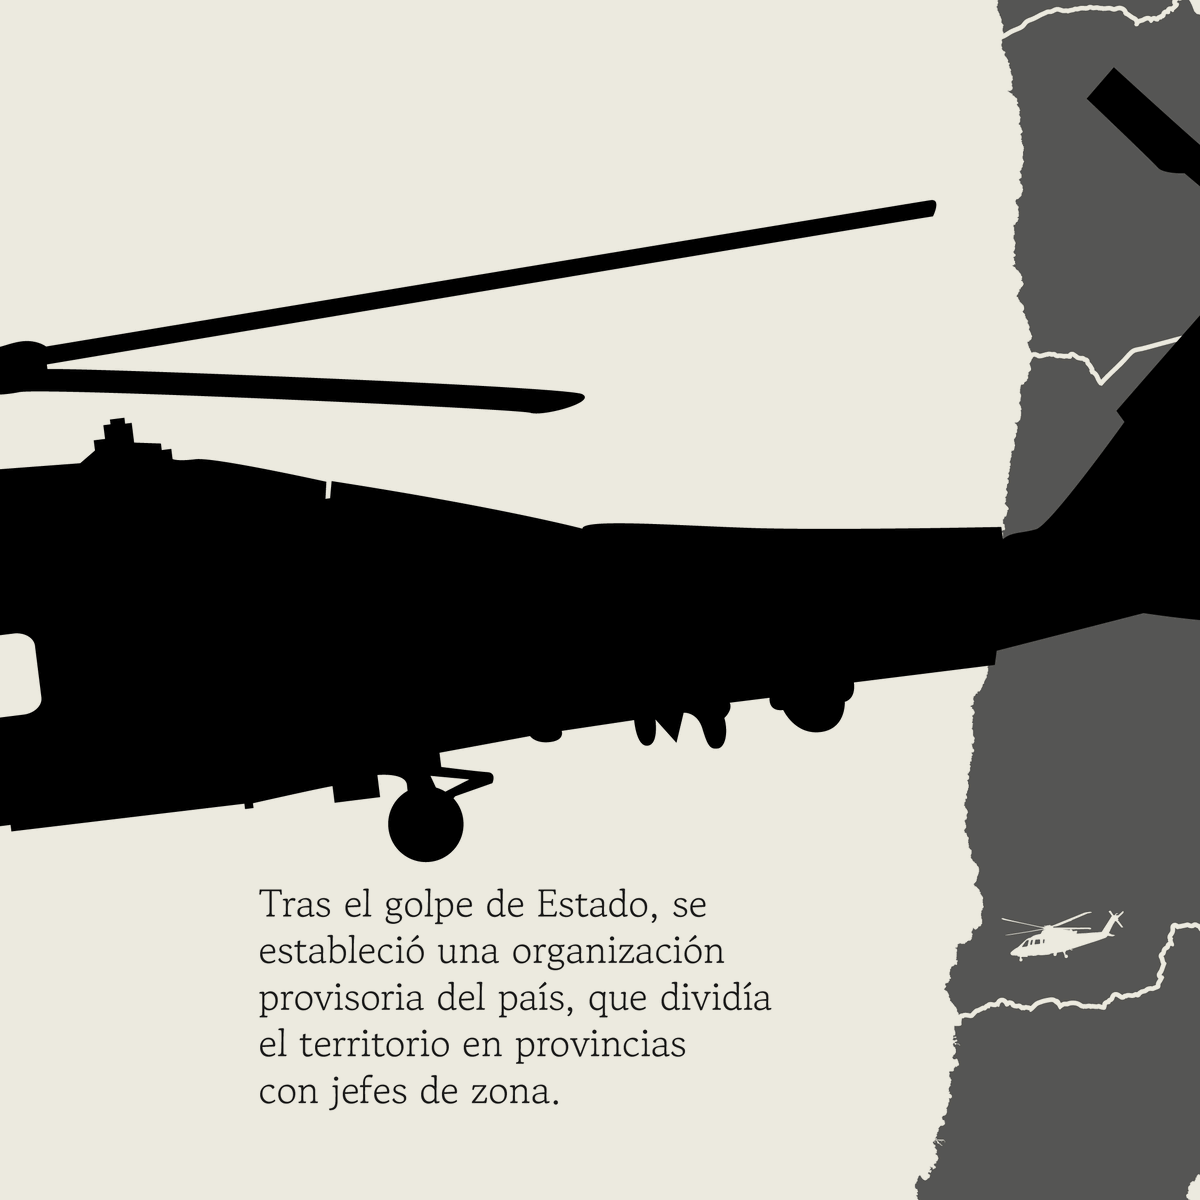 El 16 de octubre de 1973, la comitiva liderada por Sergio Arellano Stark emprendió rumbo hacia La Serena para continuar el proceso conocido como 'Caravana de la Muerte'.

#50AñosDelGolpe